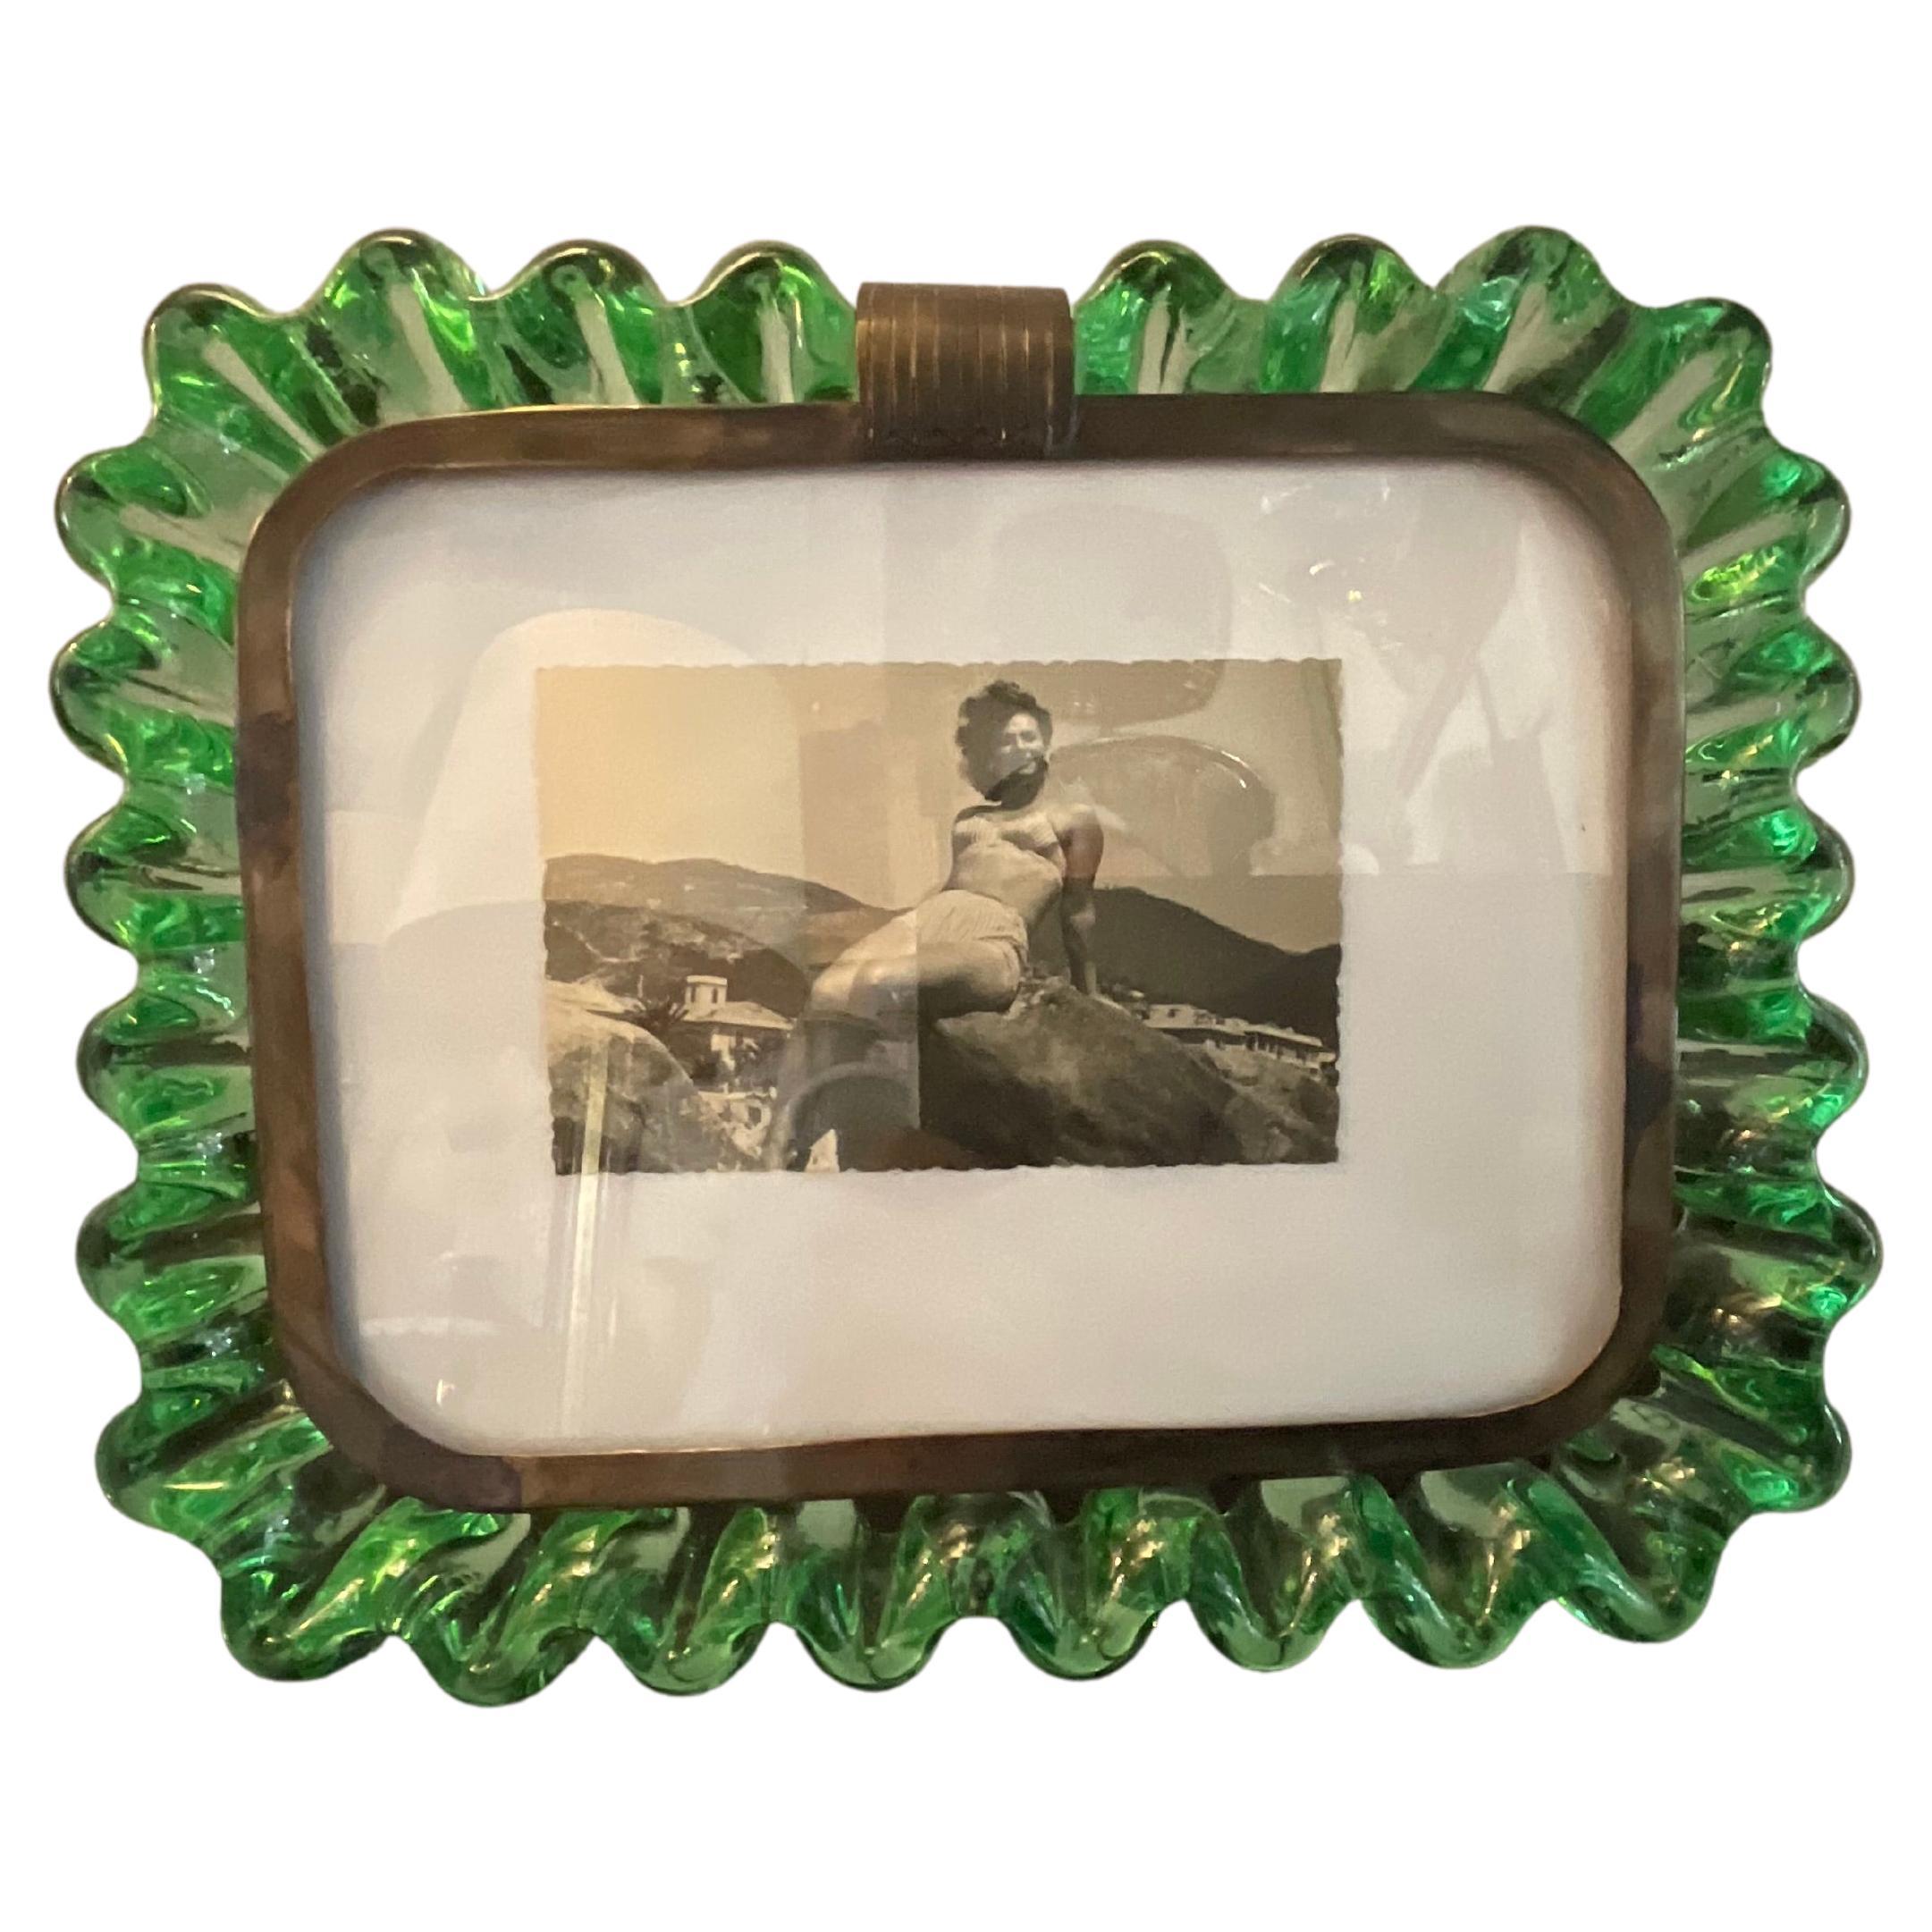 VENINI-Carlo Scarpa - Murano Glass Holder - 1940s - 20th century.